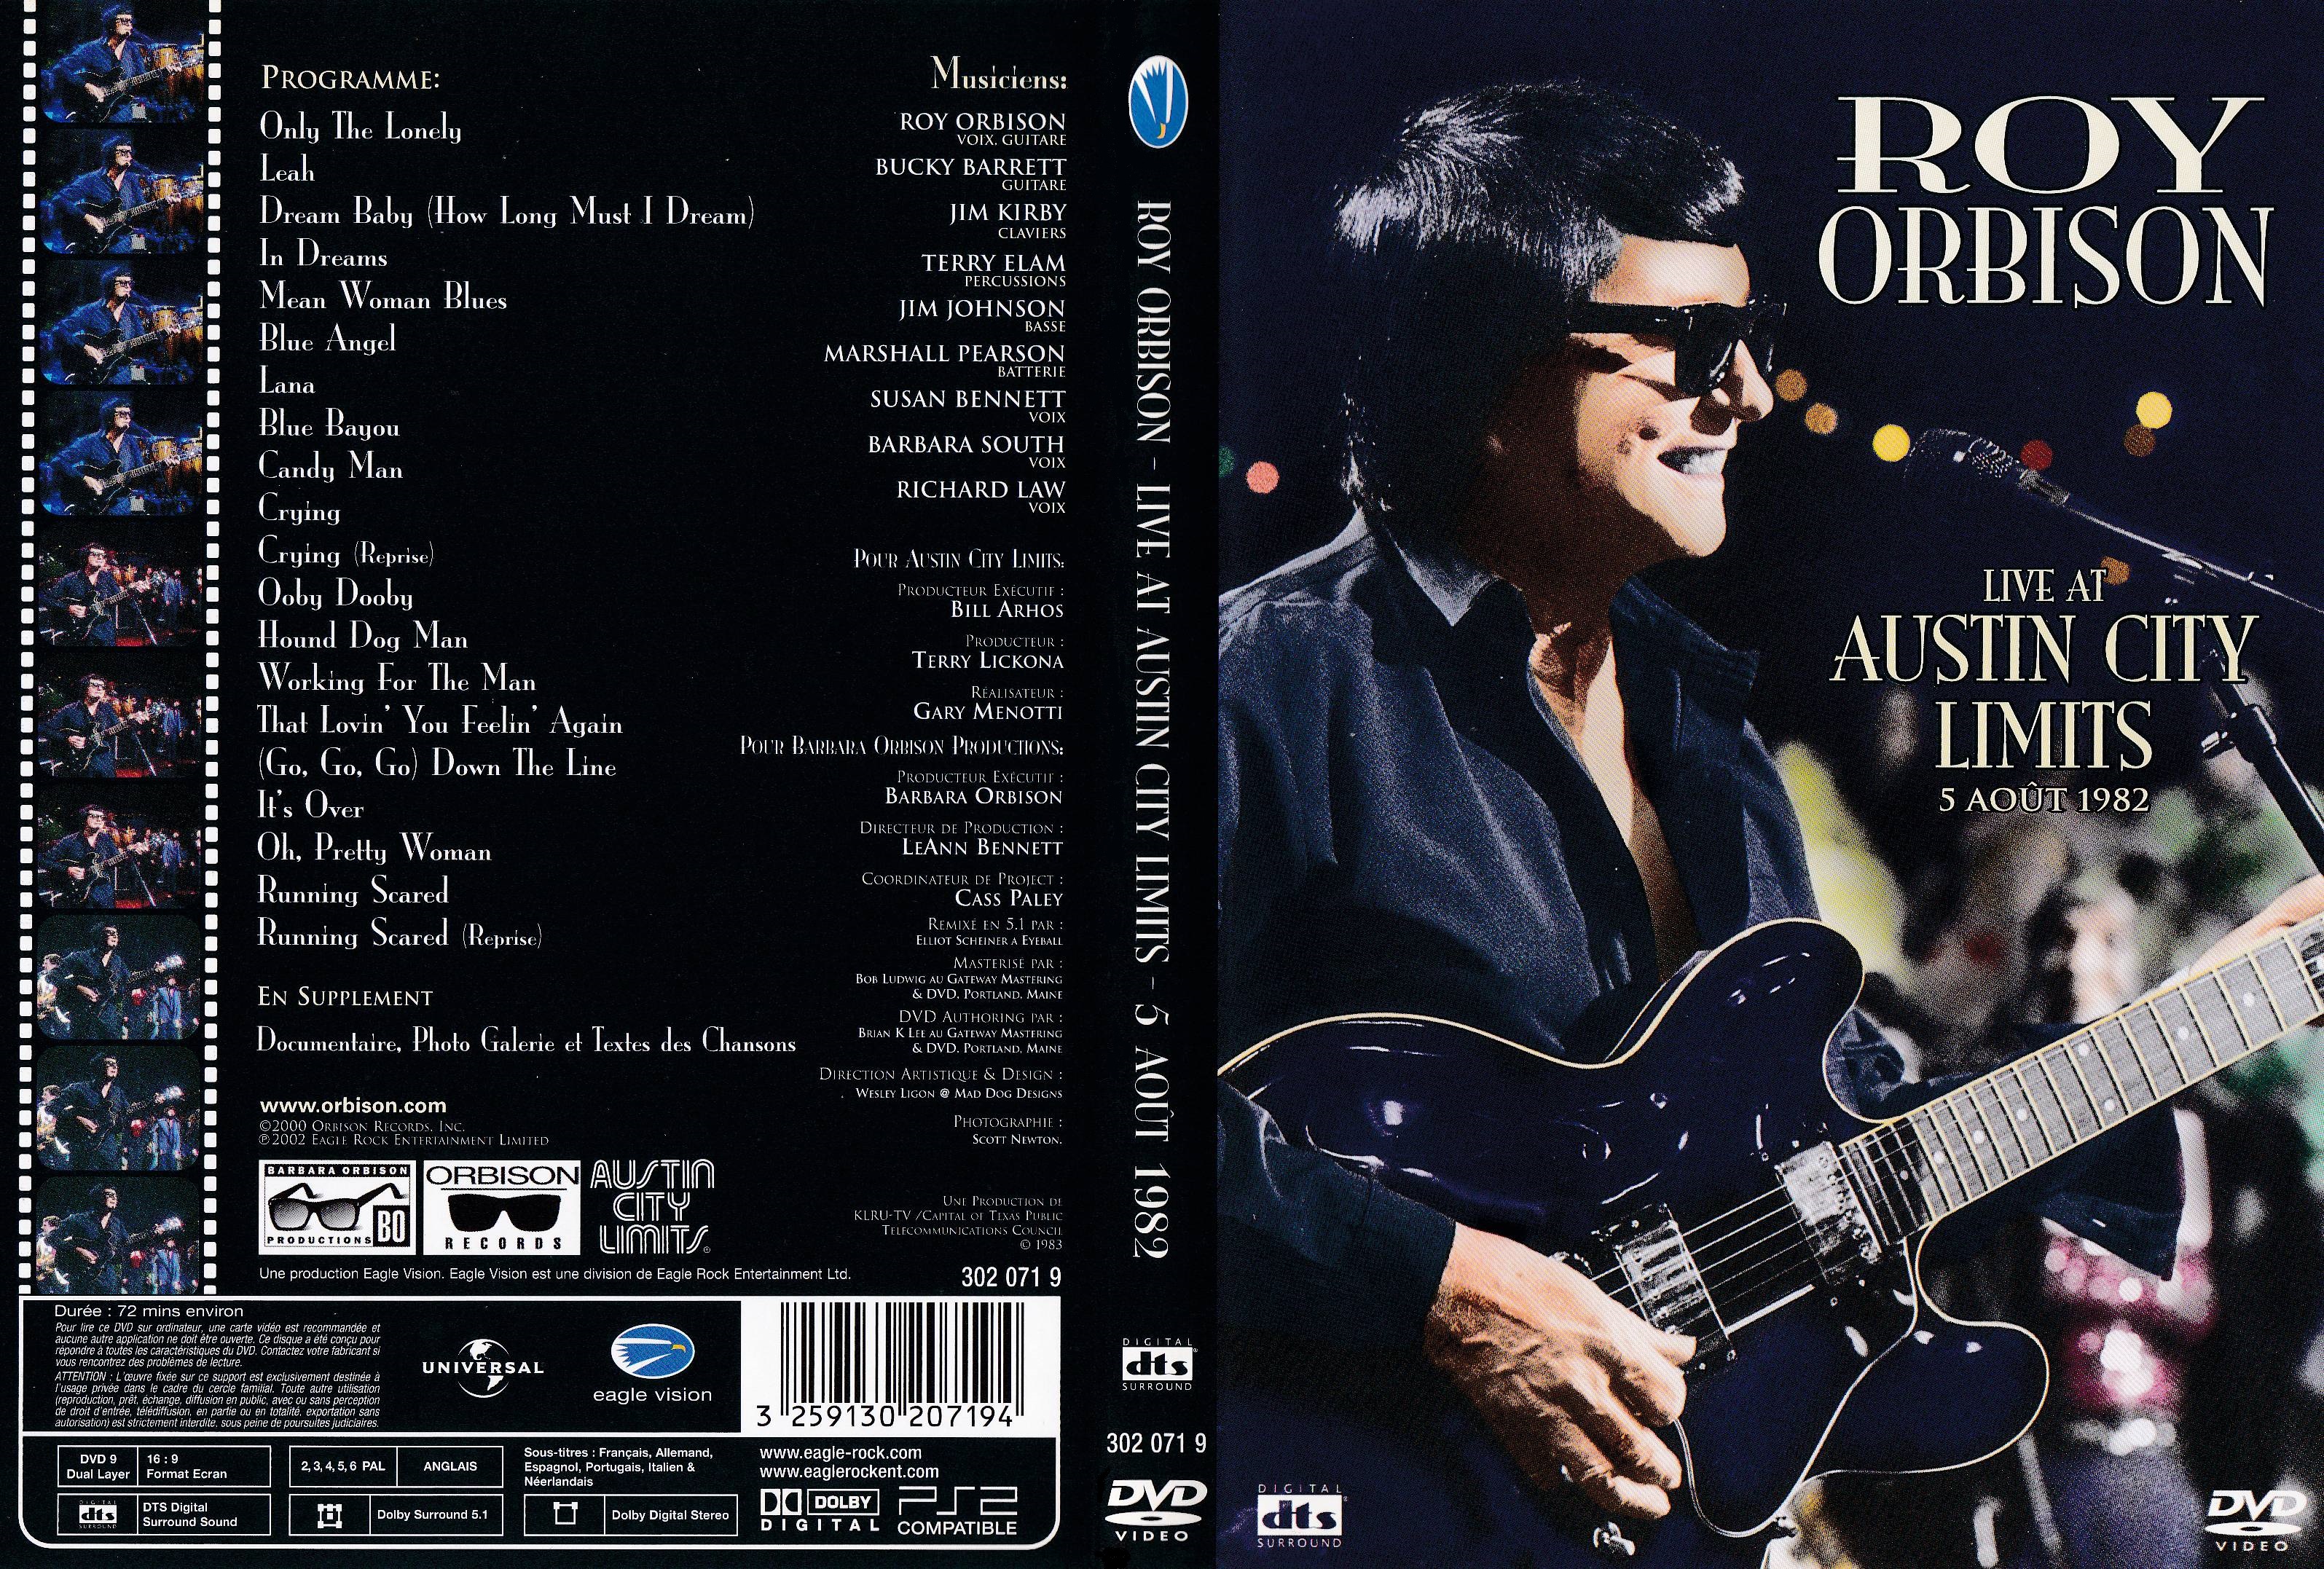 Jaquette DVD Roy Orbison live at Austin City Limits 